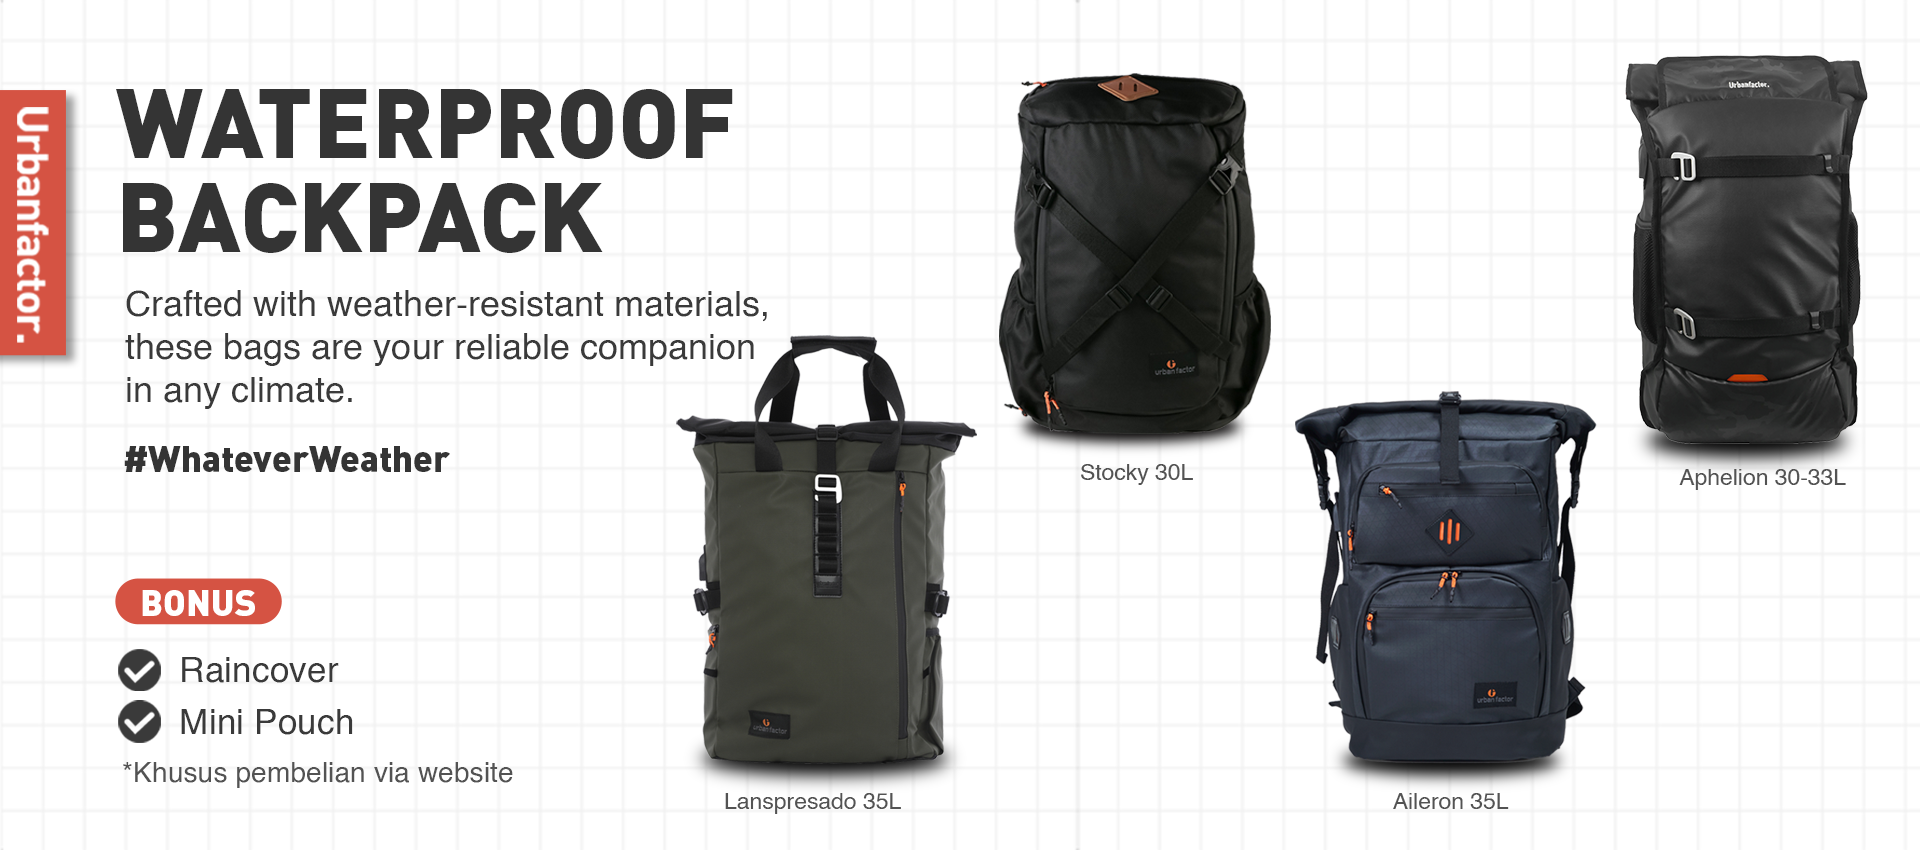 Waterproof Backpack Line Up